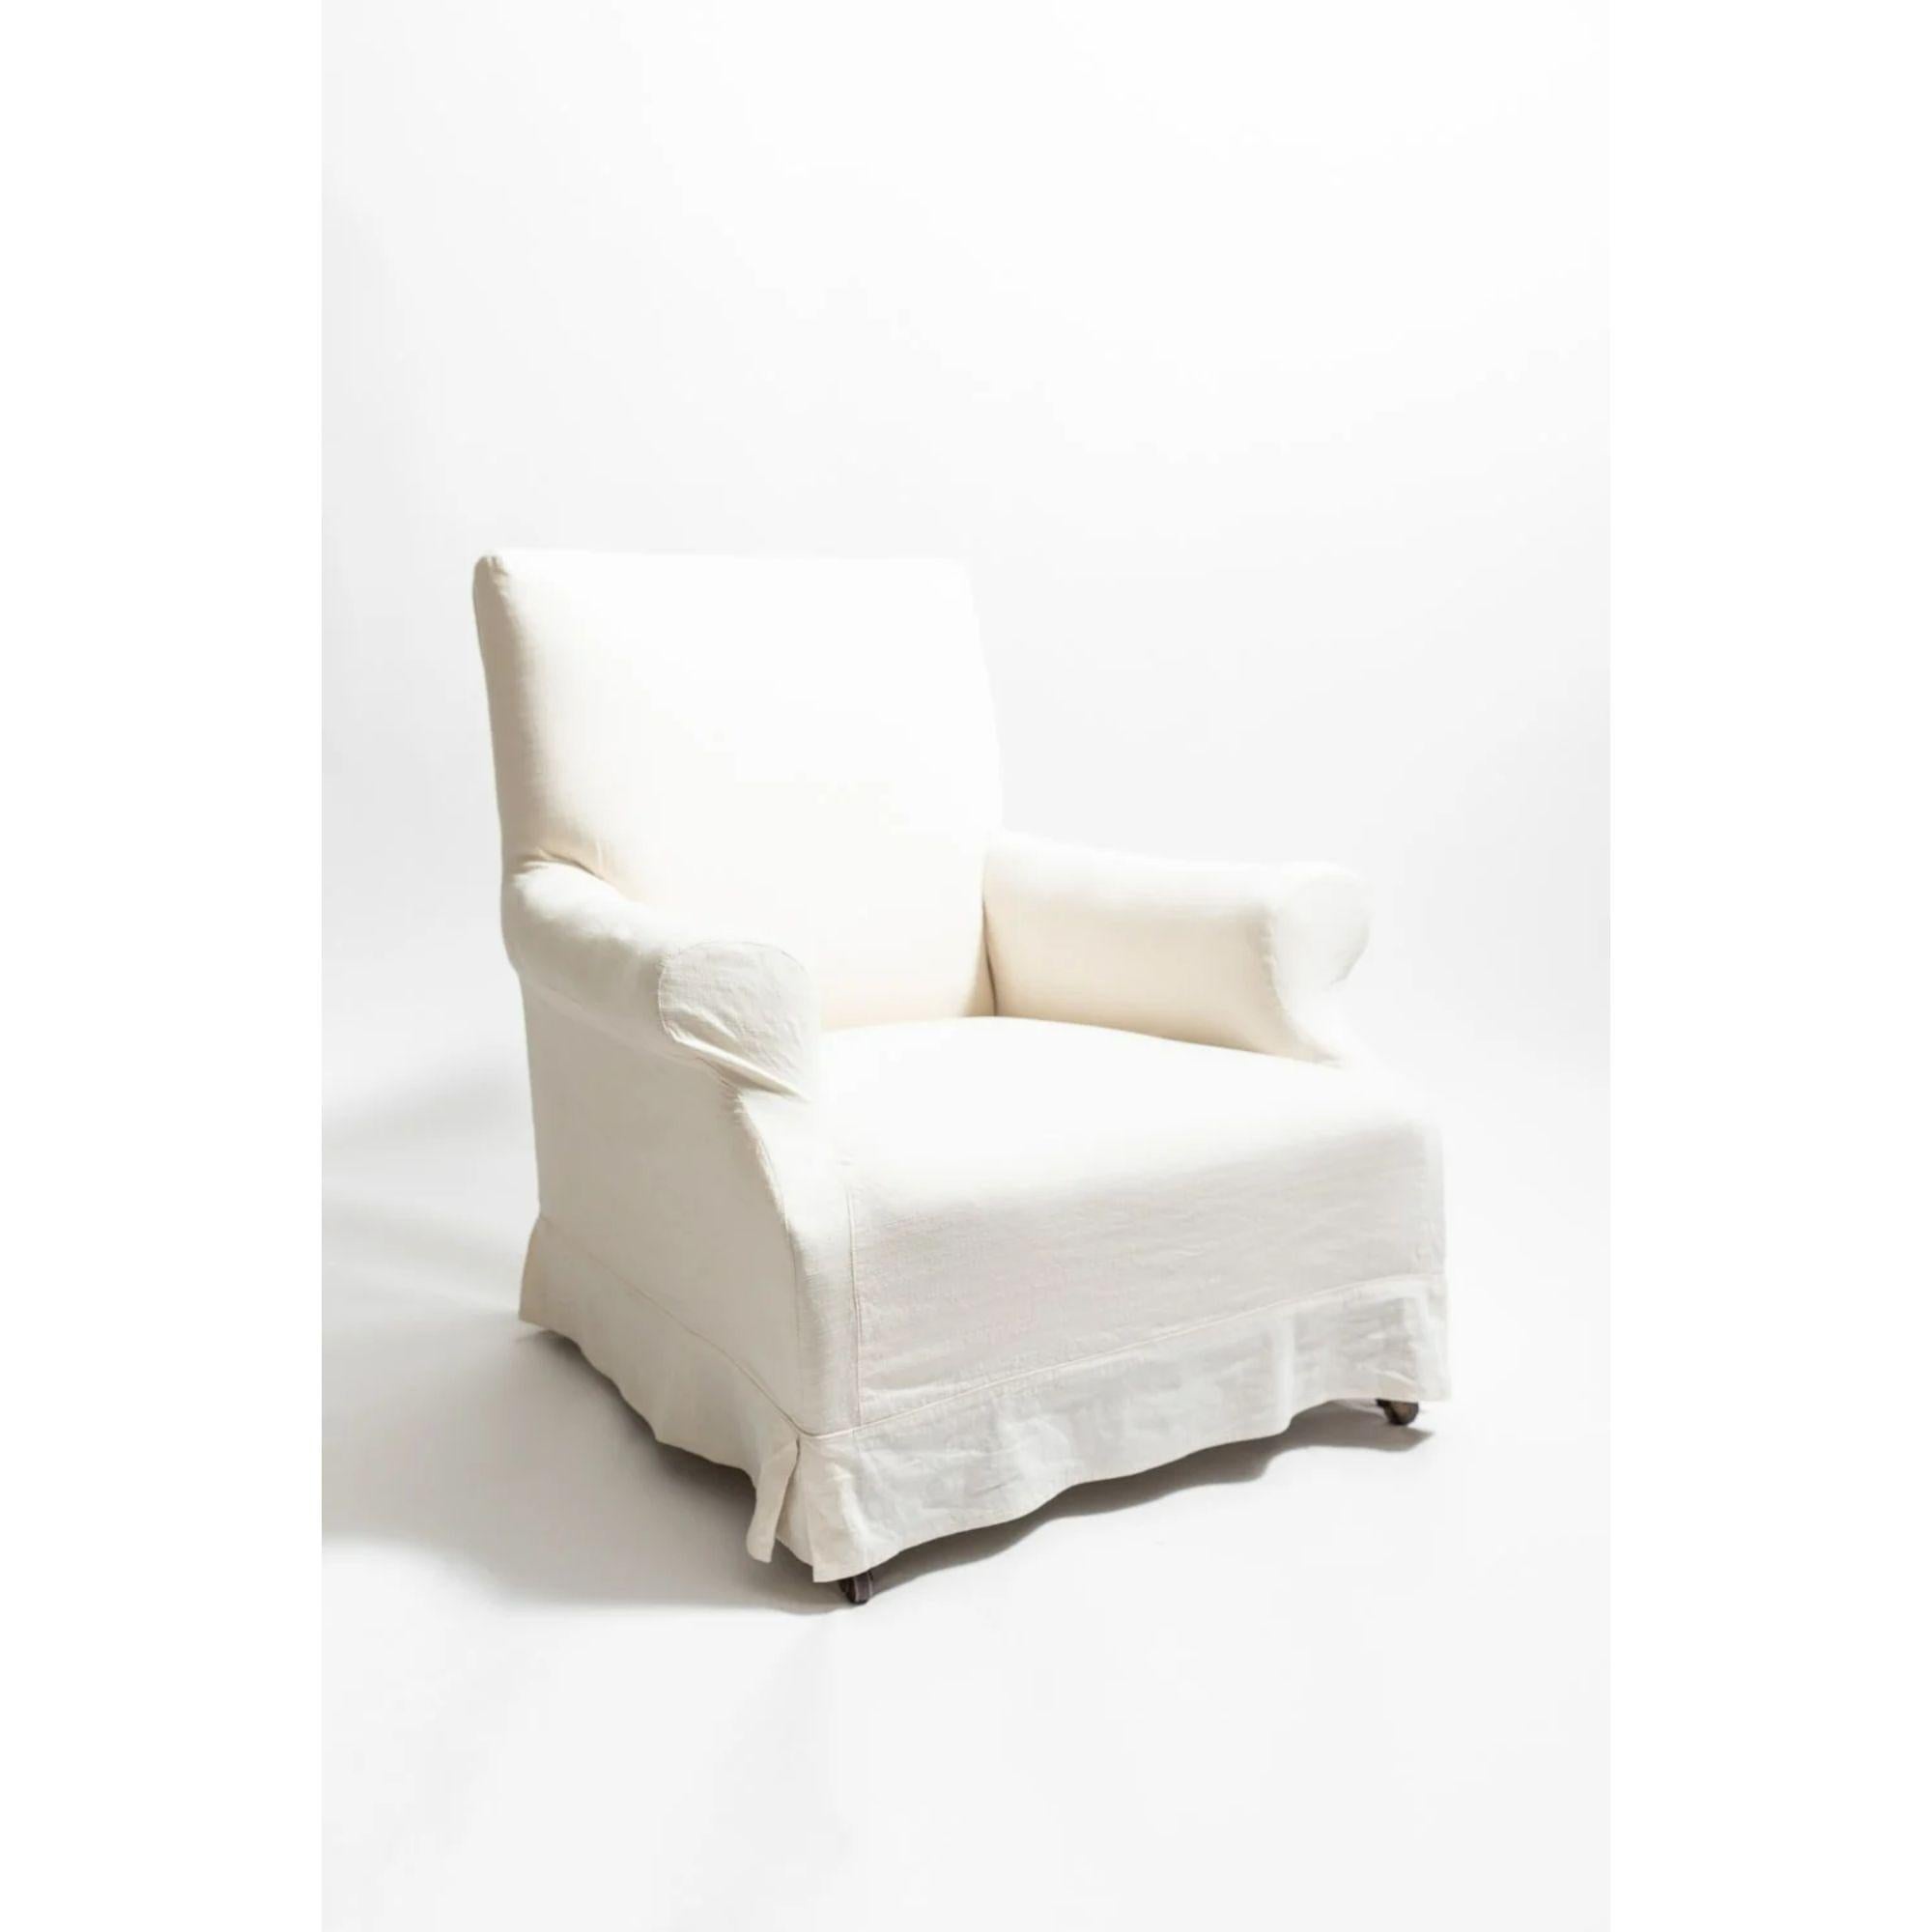 Viktorianischer Sessel aus Nussbaumholz

Ein viktorianischer Sessel aus Nussbaumholz mit guten Proportionen. Vollständig restauriert und mit Kattun bezogen. Lose Hülle aus 